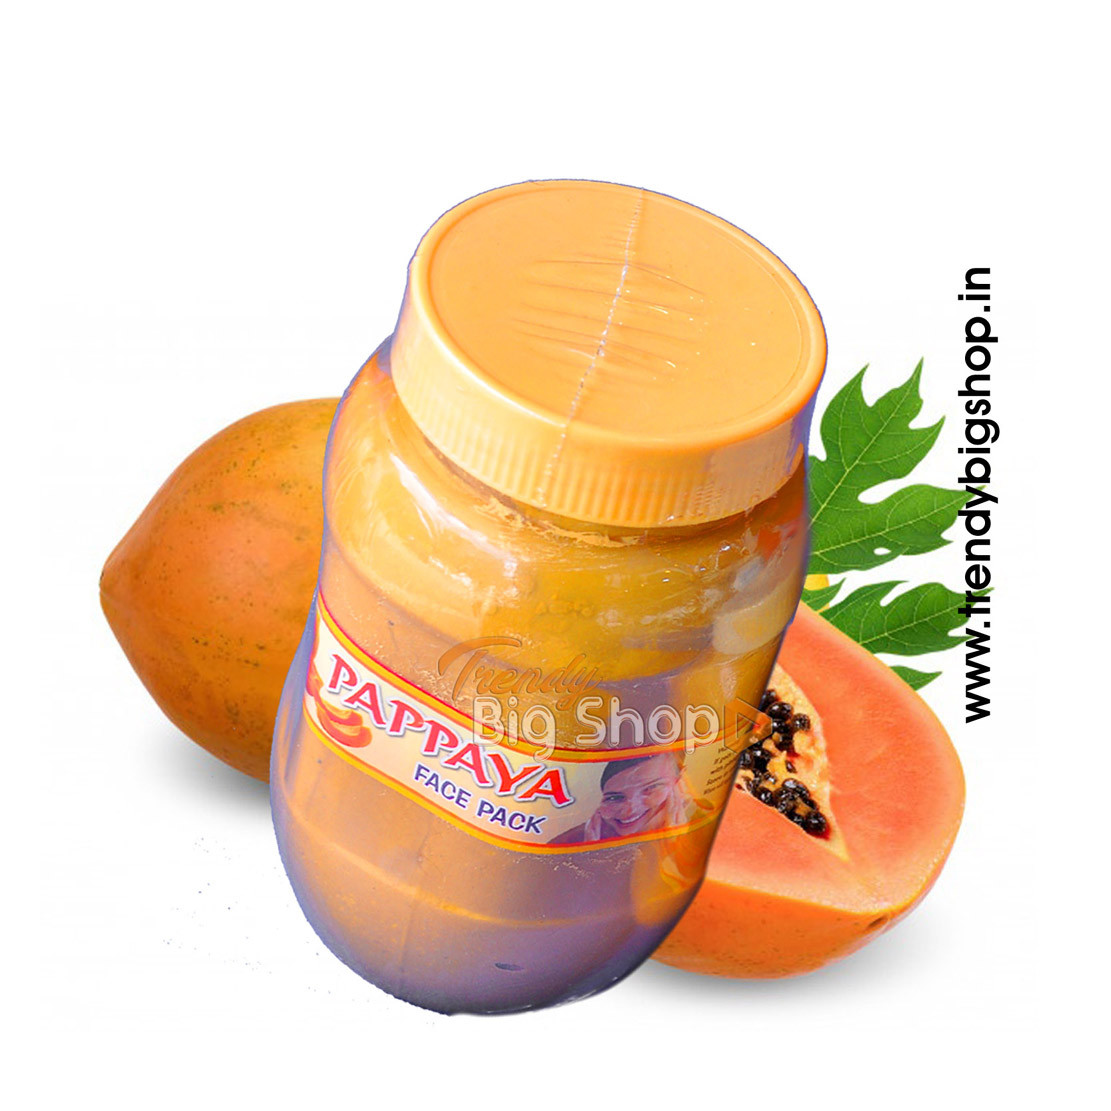 Papaya Face Pack 500gm, Organic Papaya for Skin Whitening in online shop kodai